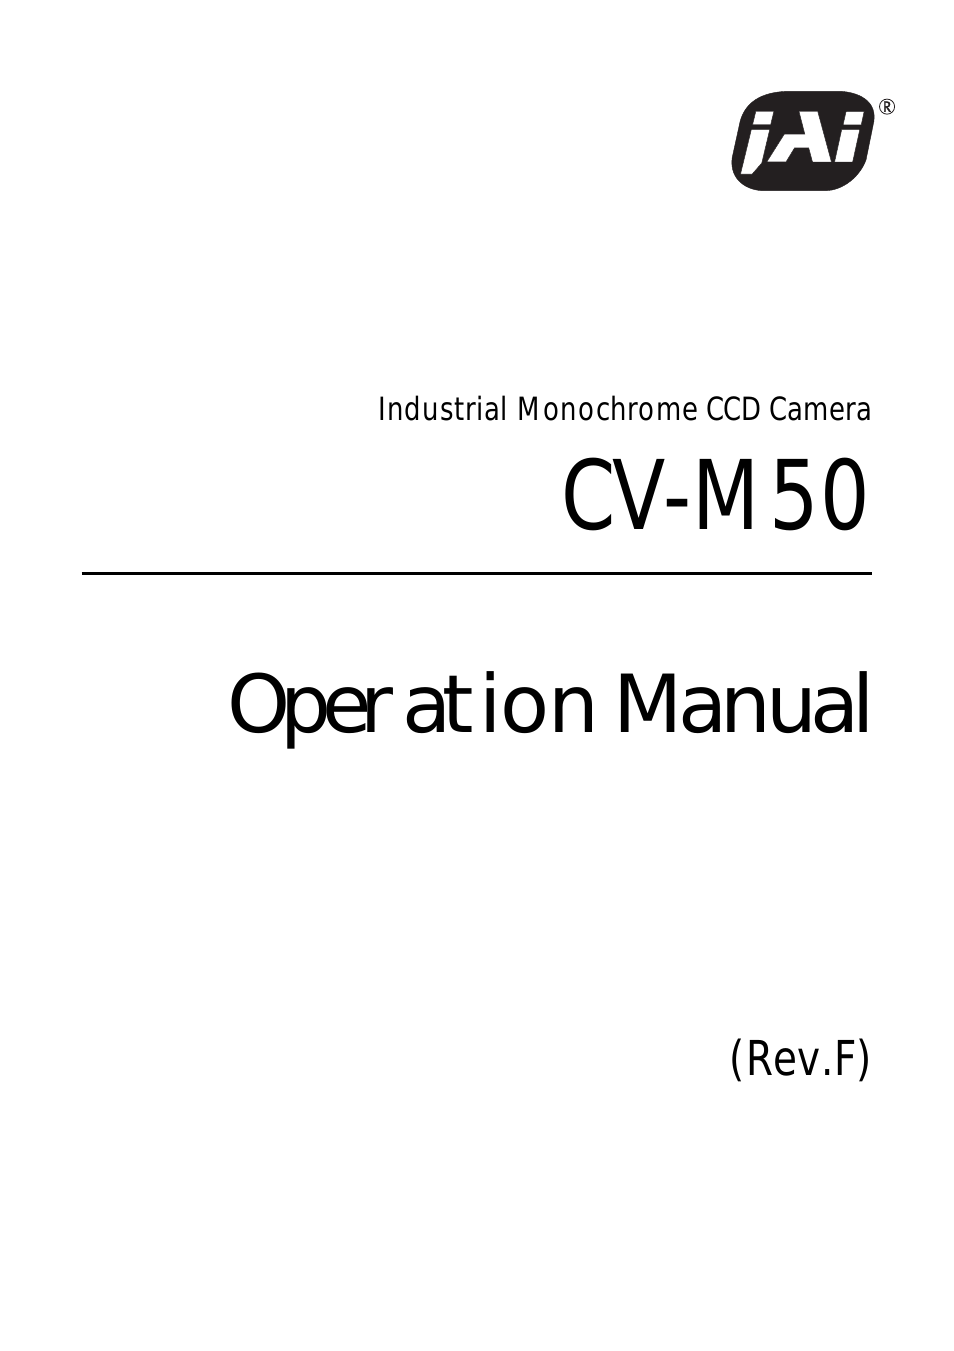 CV-M50